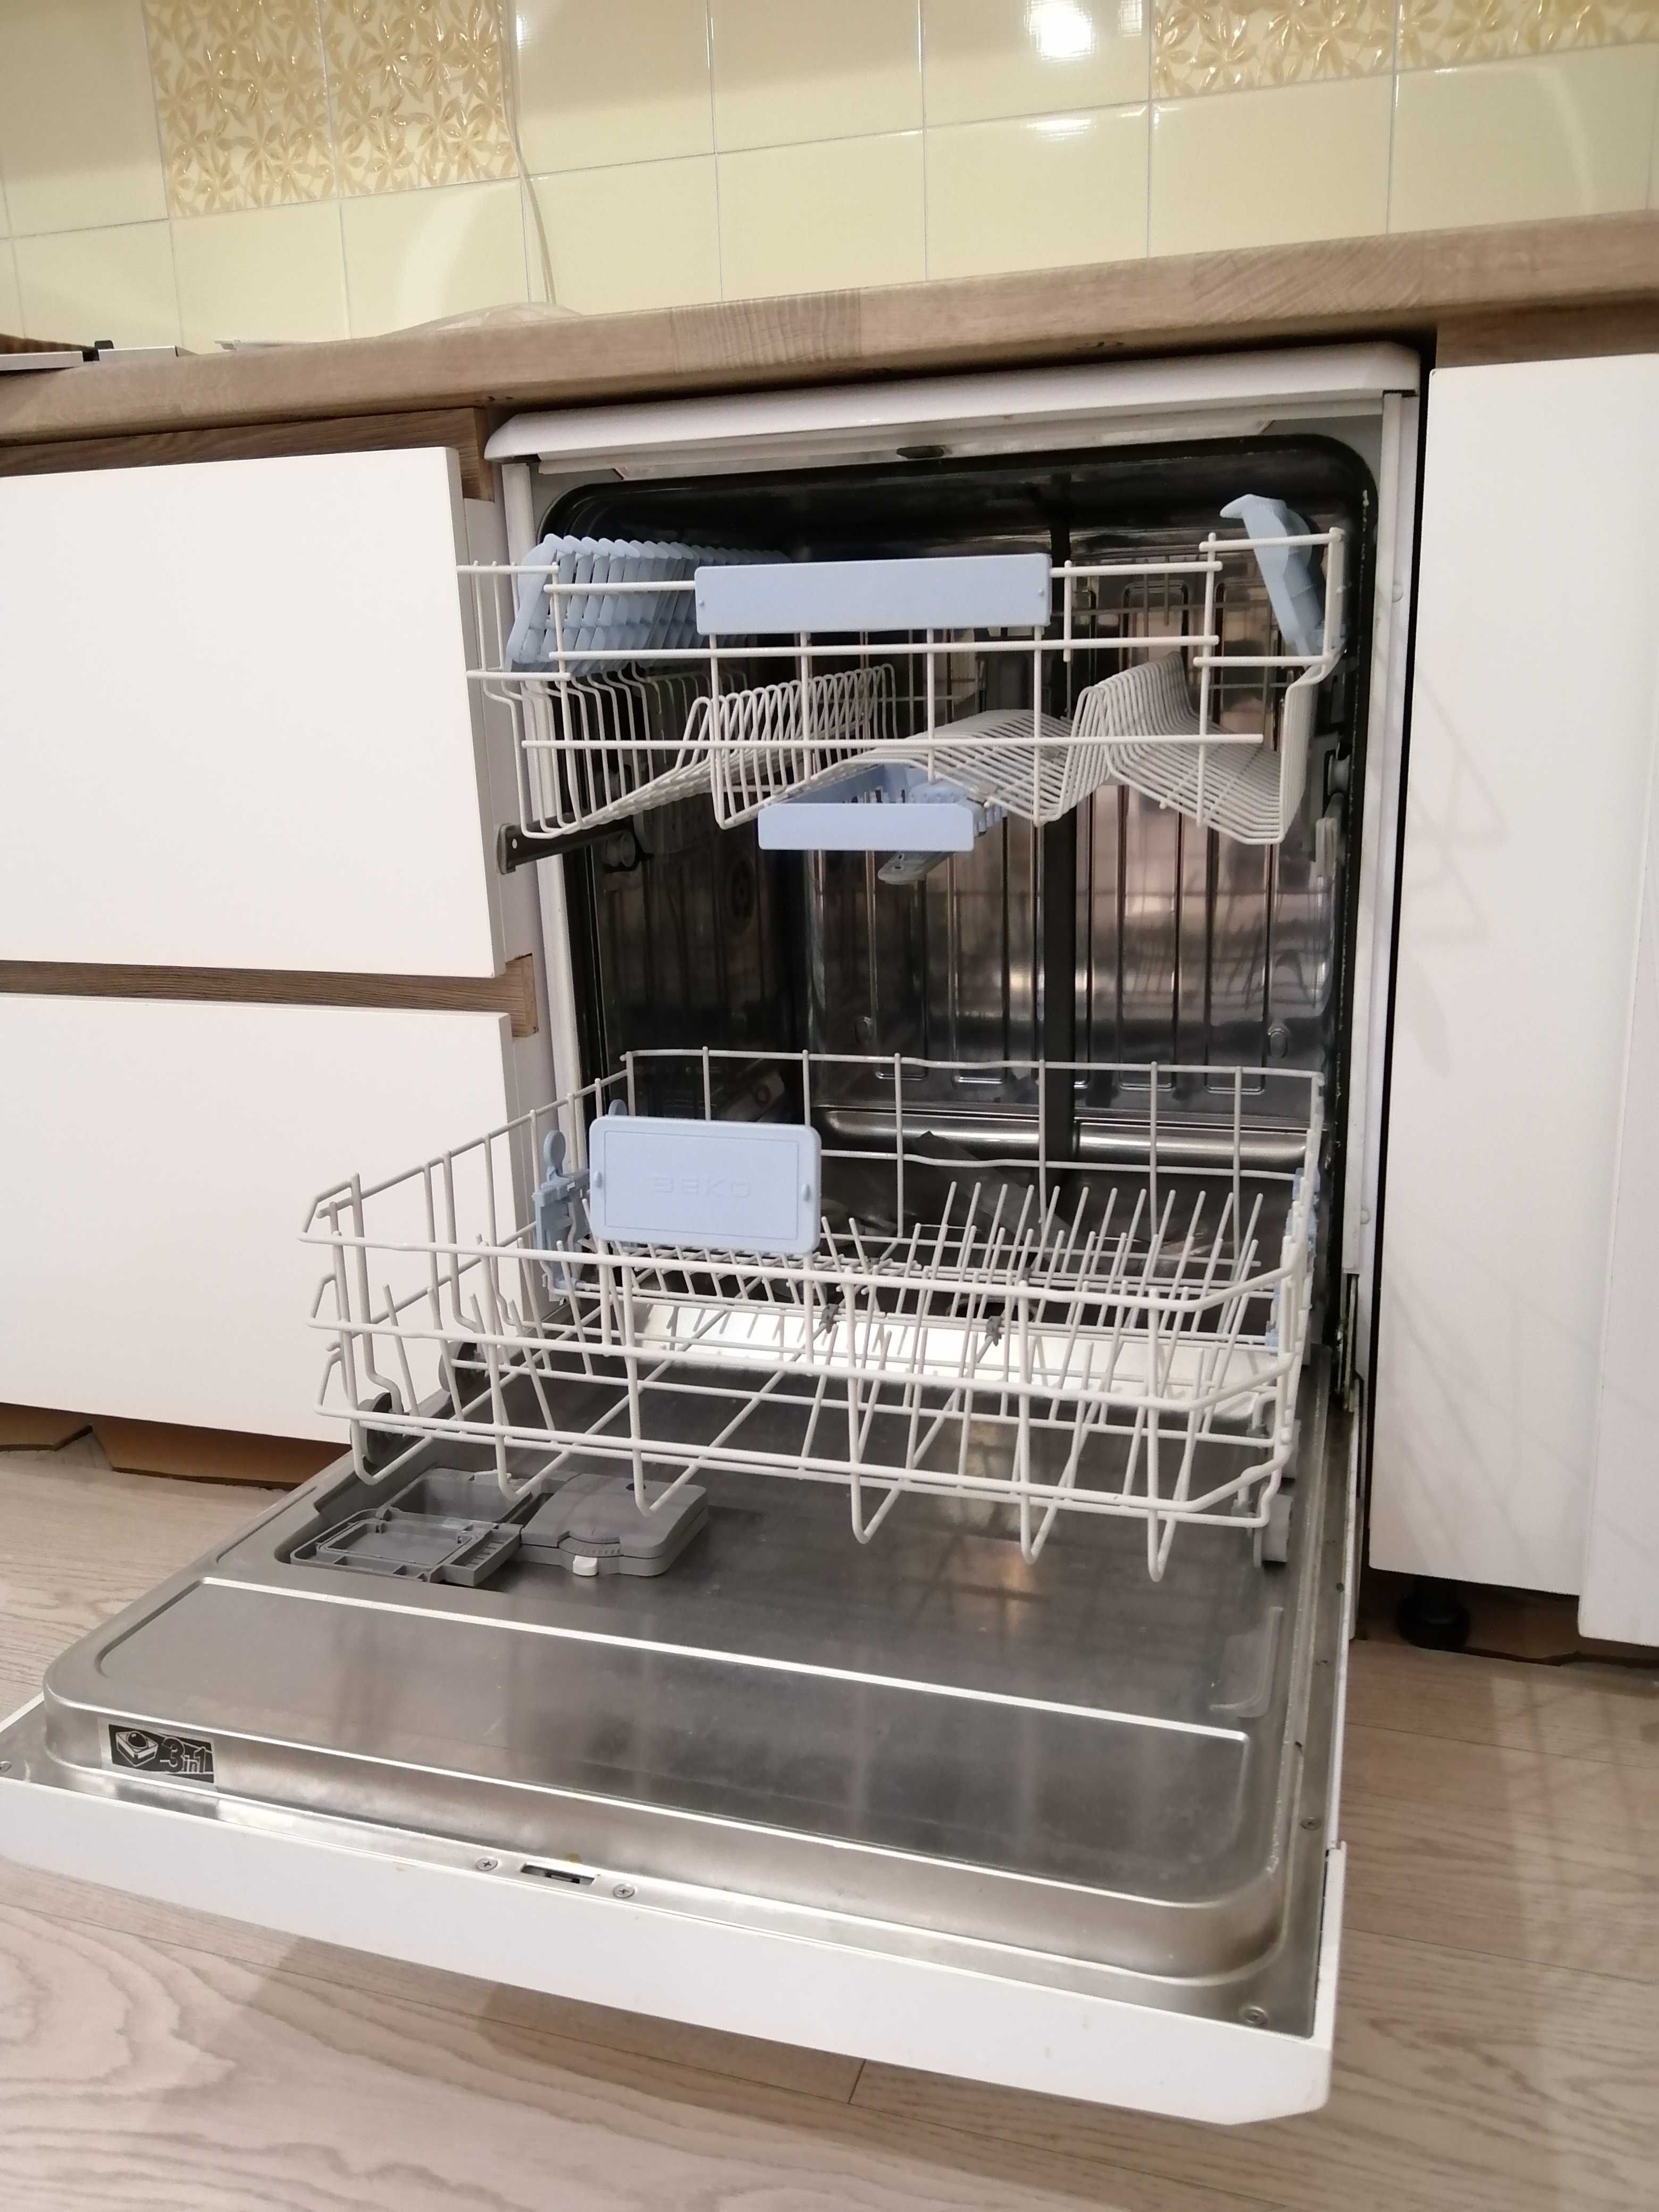 Продам посудомоечную машину Beko 30 000